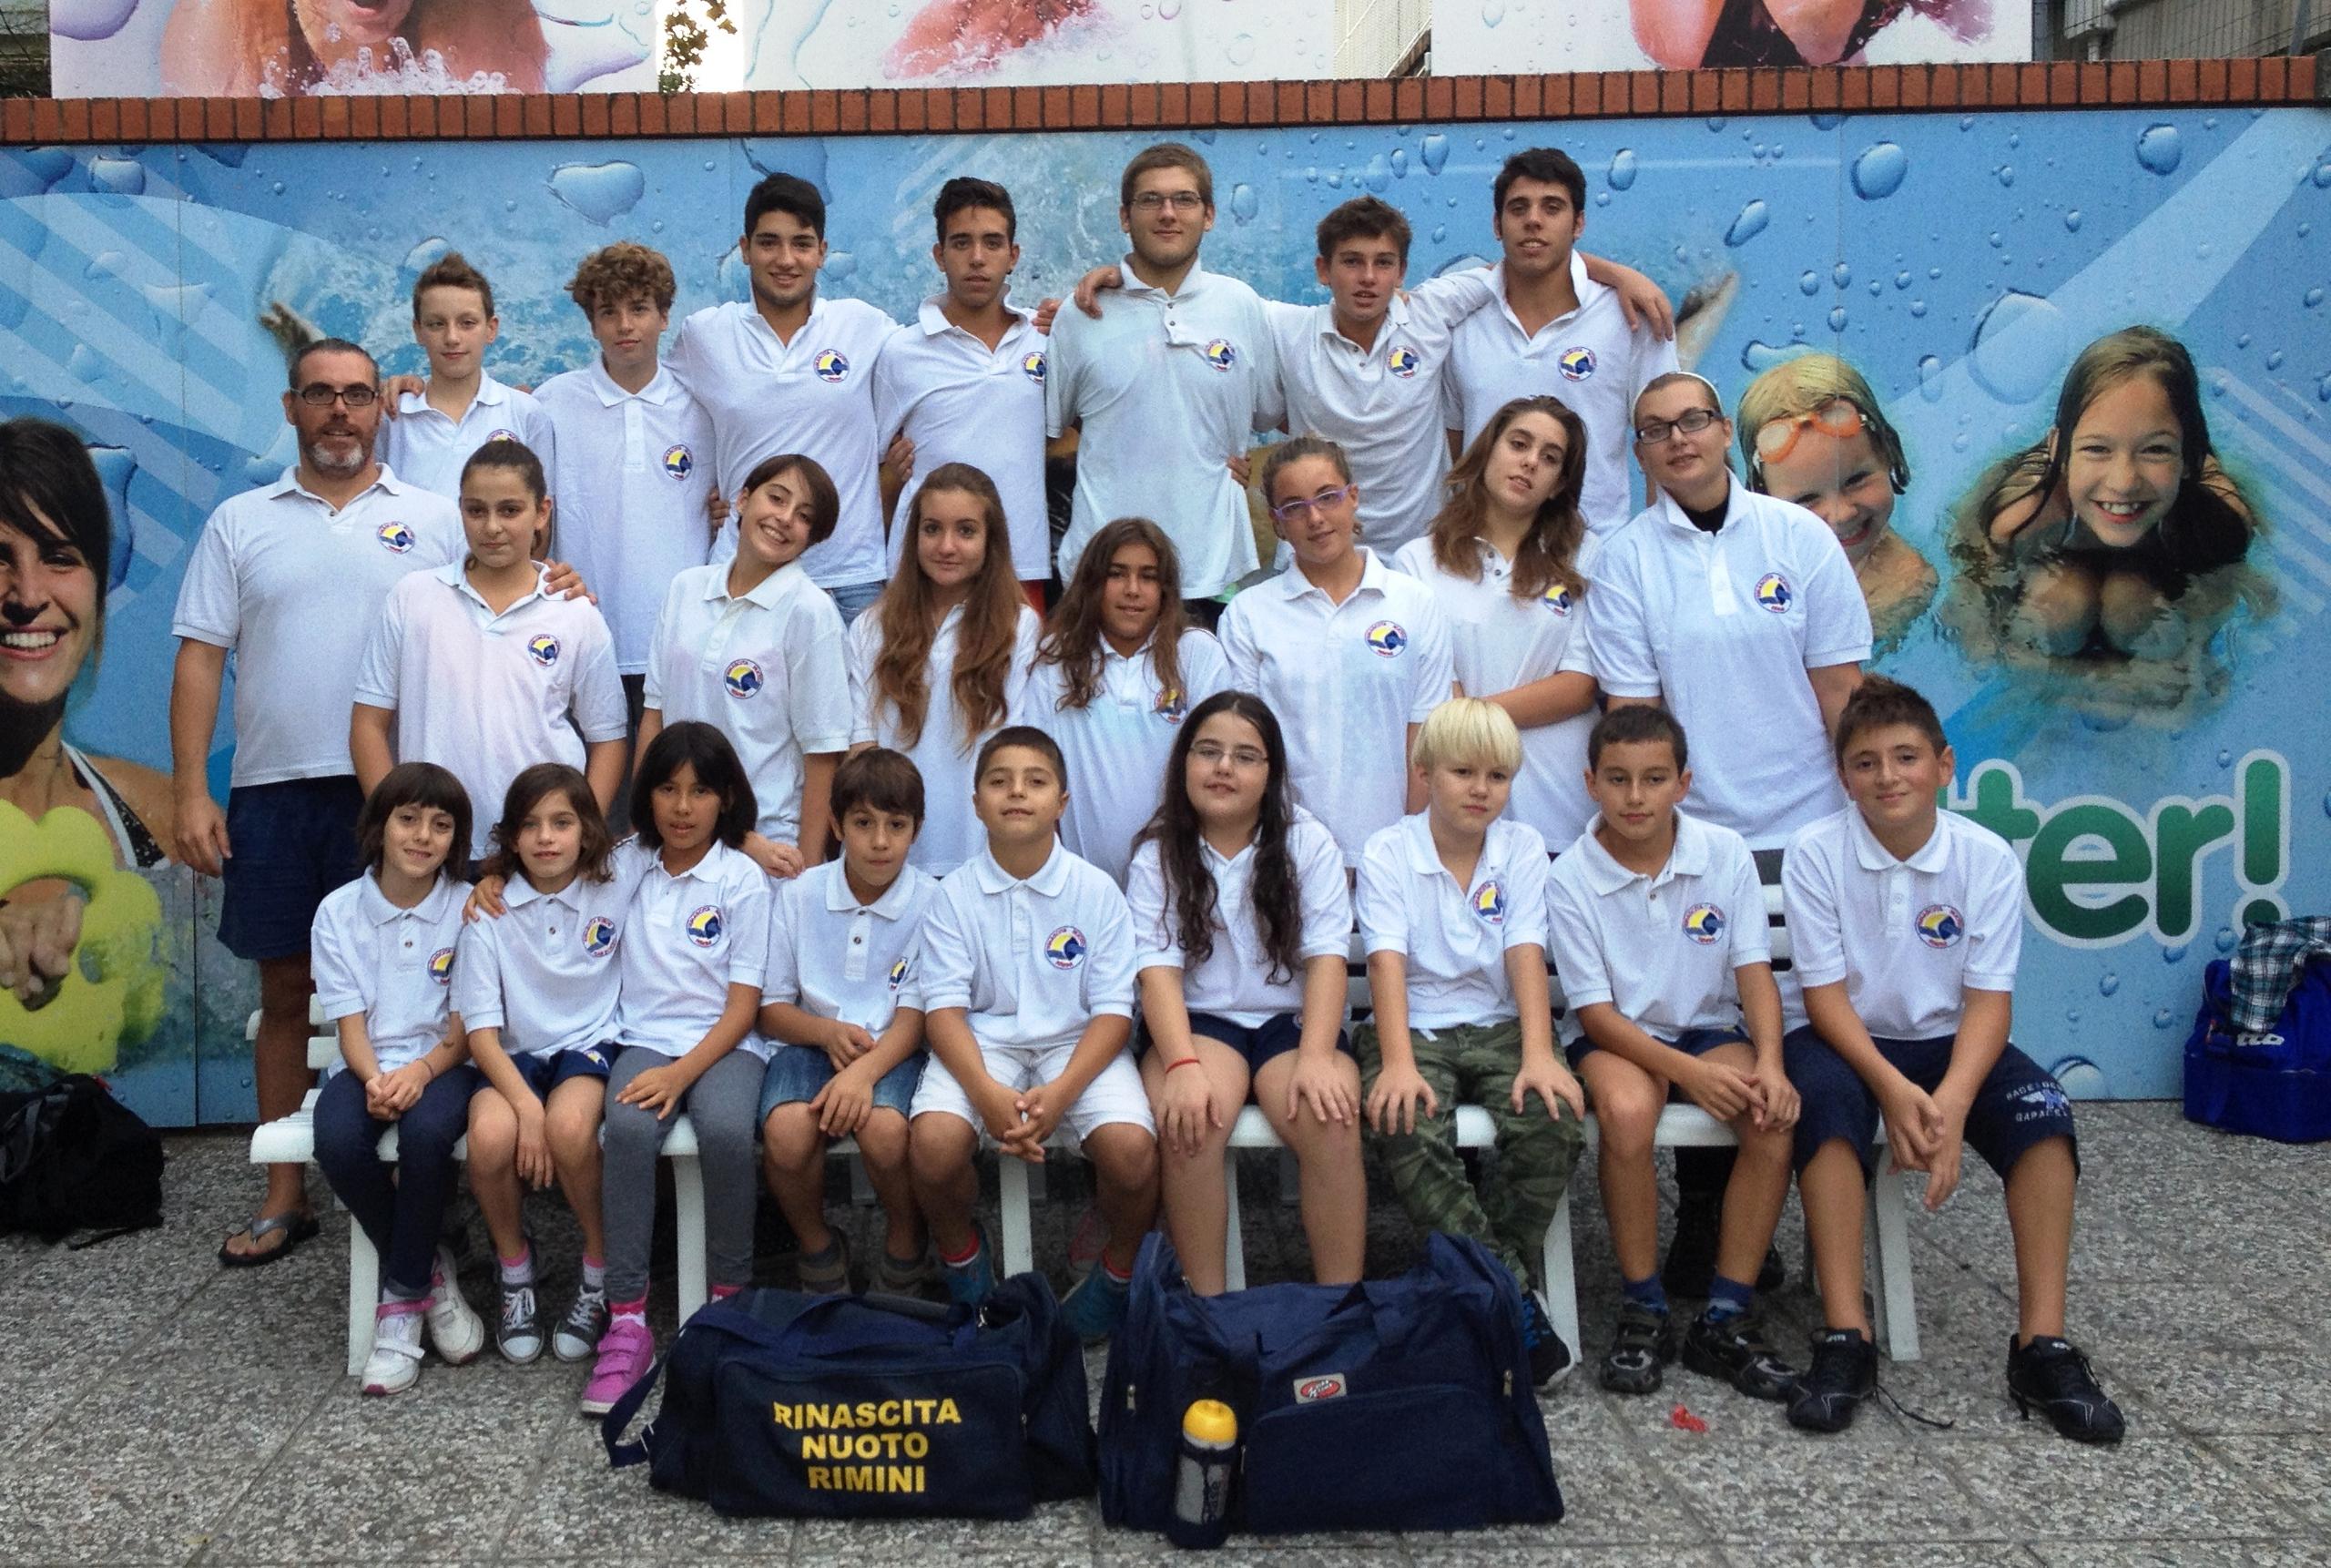 La Polisportiva Rinascita aderisce al progetto “Back to Sport”